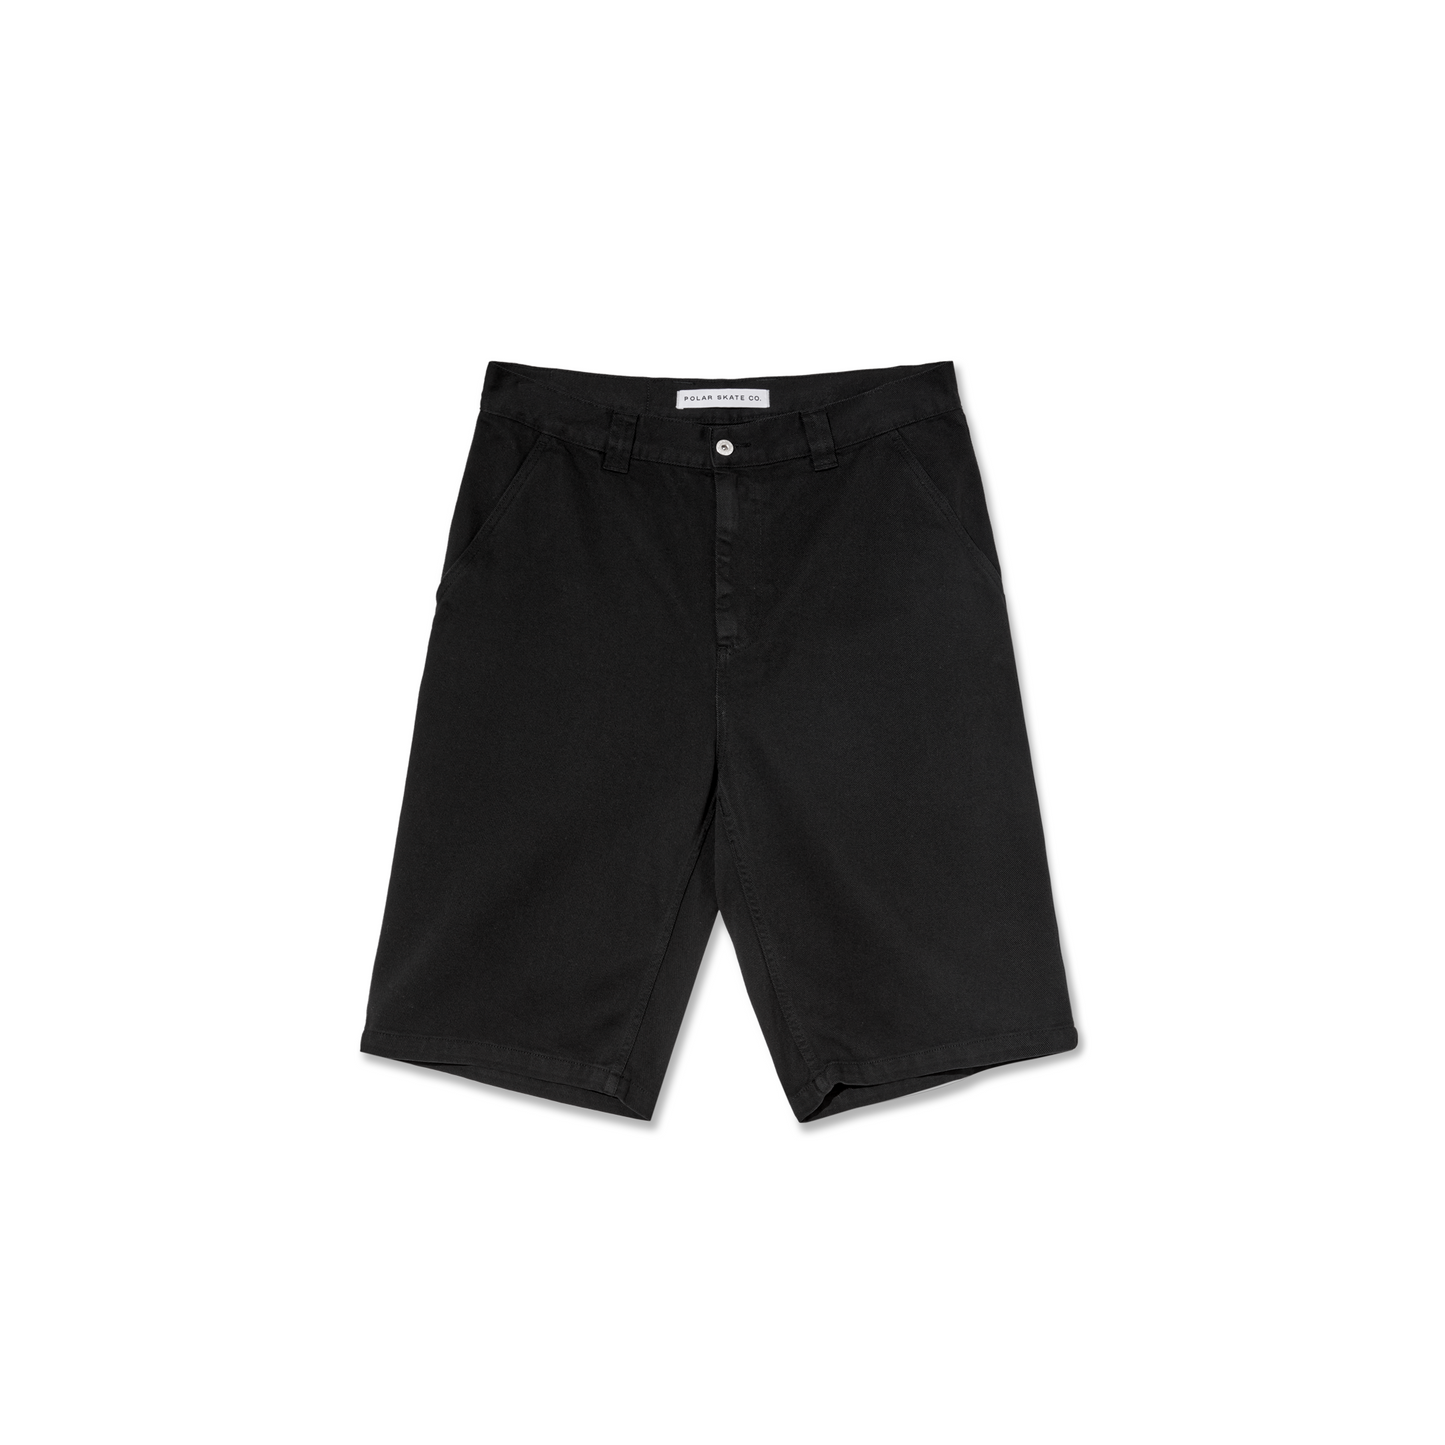 Polar - 44 Twill Shorts Black